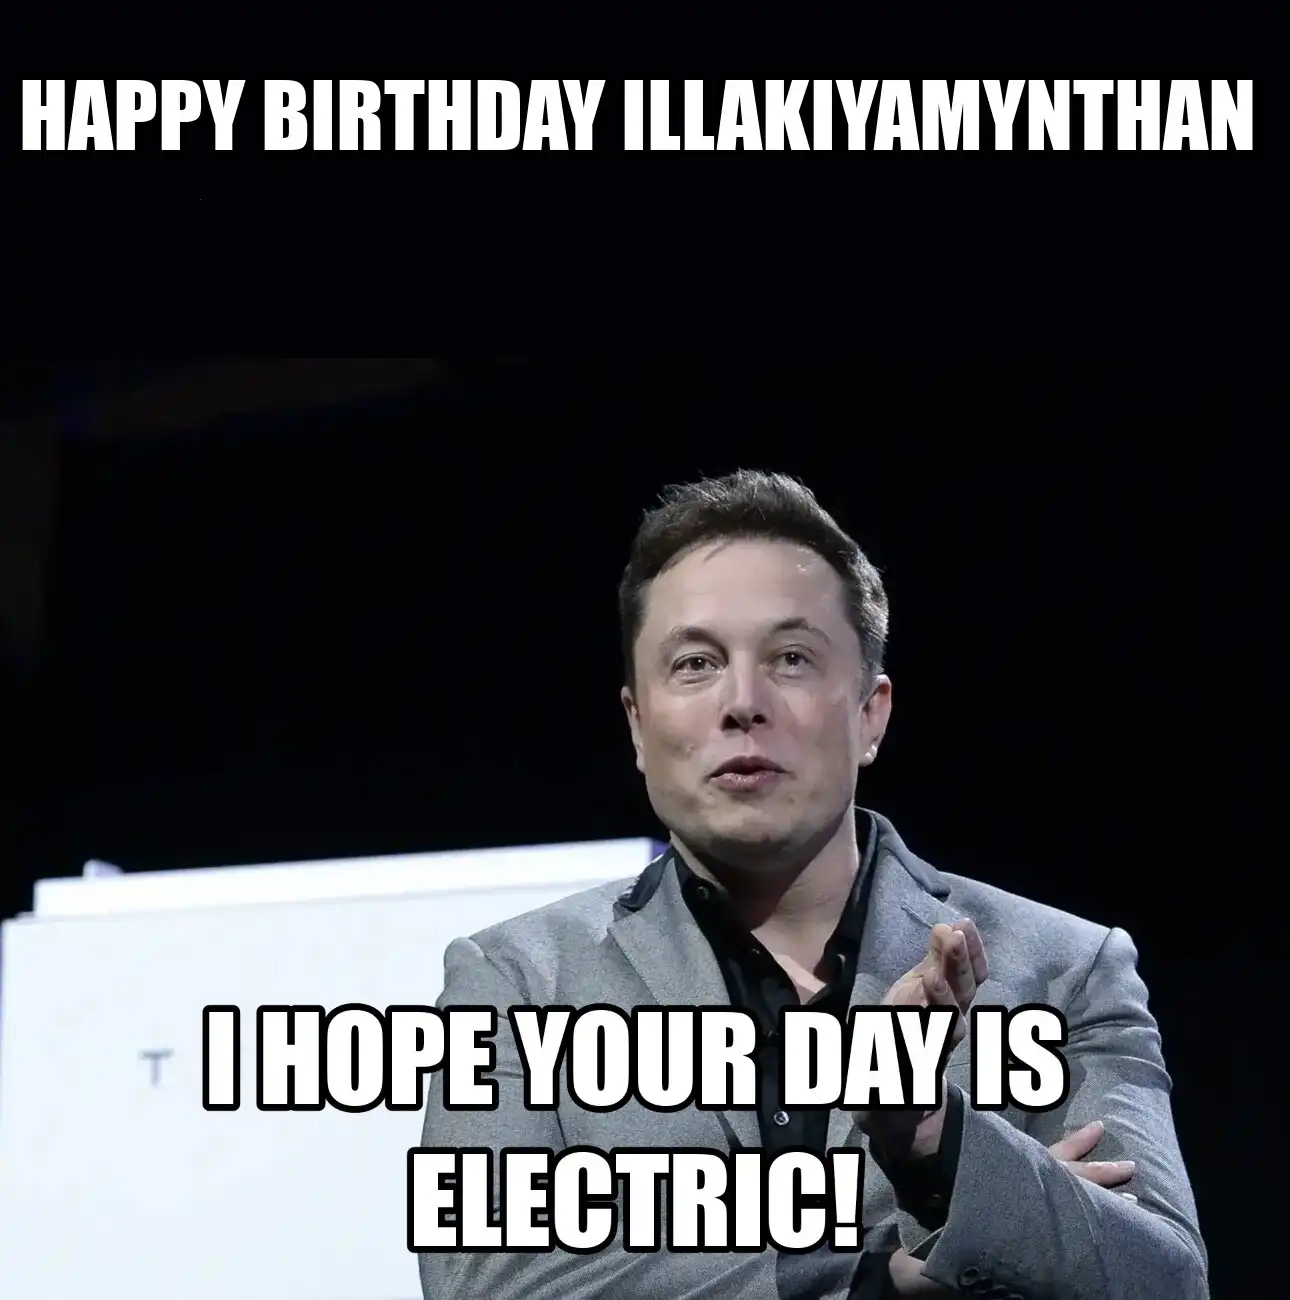 Happy Birthday Illakiyamynthan I Hope Your Day Is Electric Meme